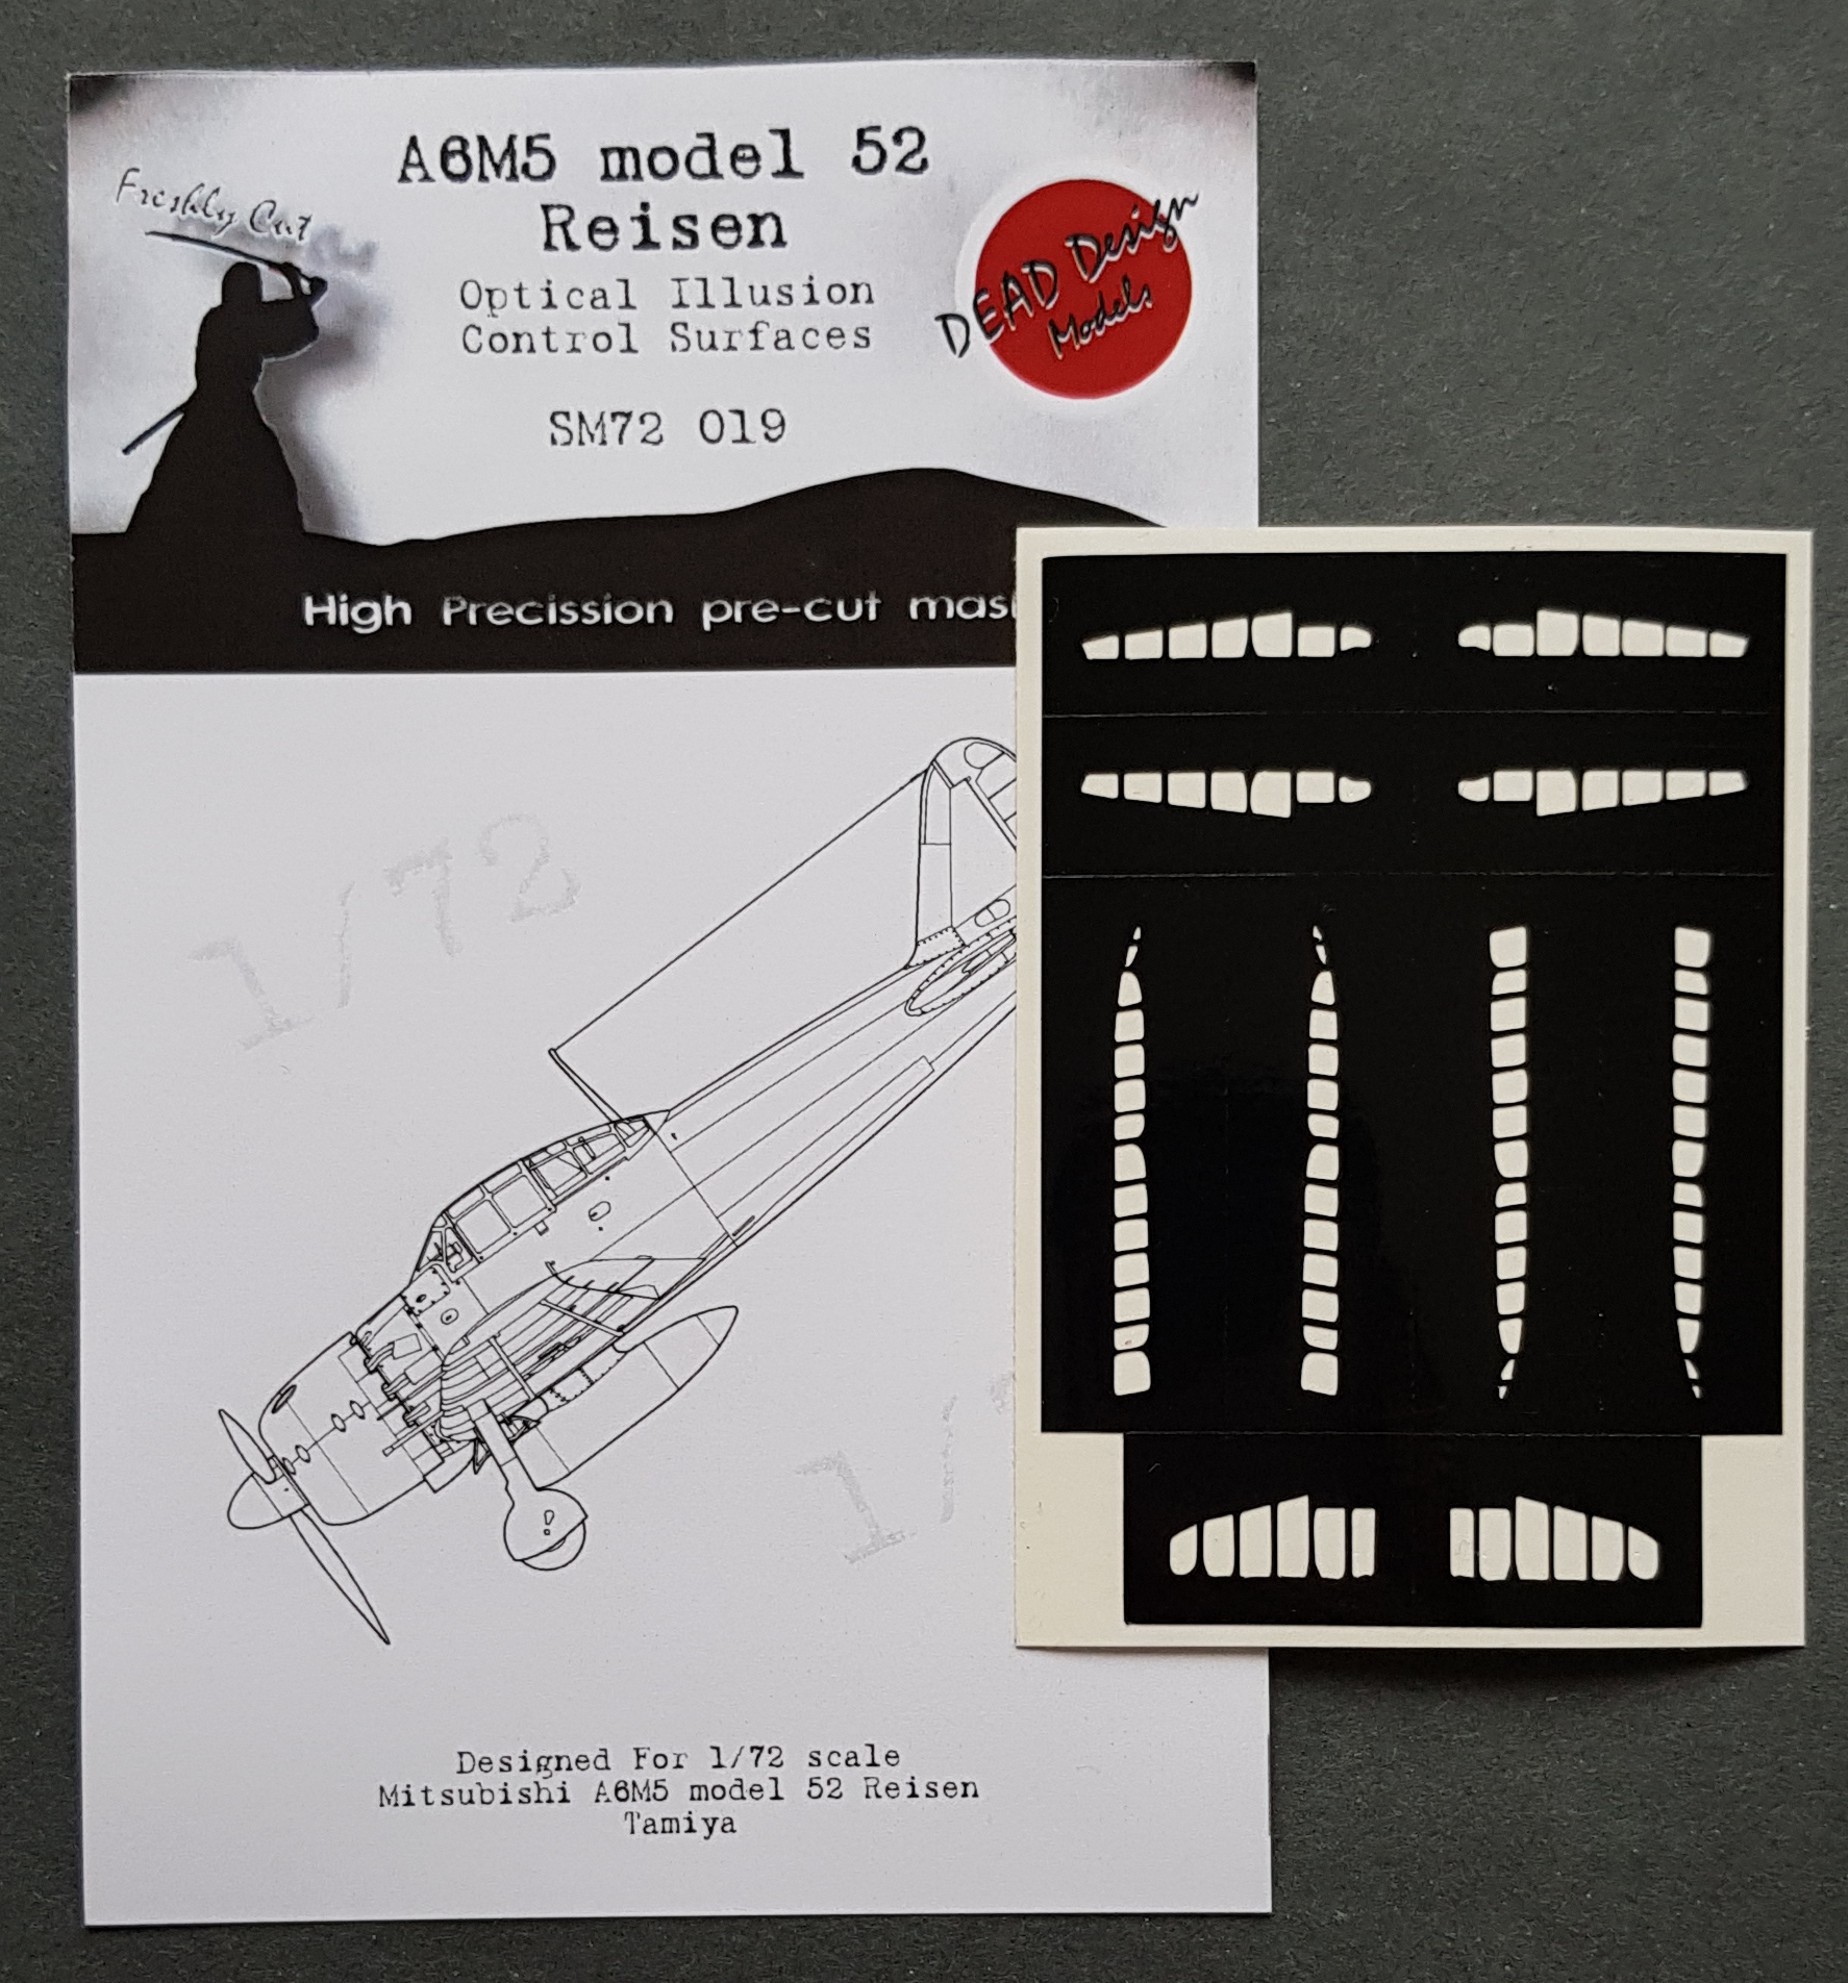  Dead Design Models Surfaces de contrôle Mitsubishi A6M5 m.52 Reisen (